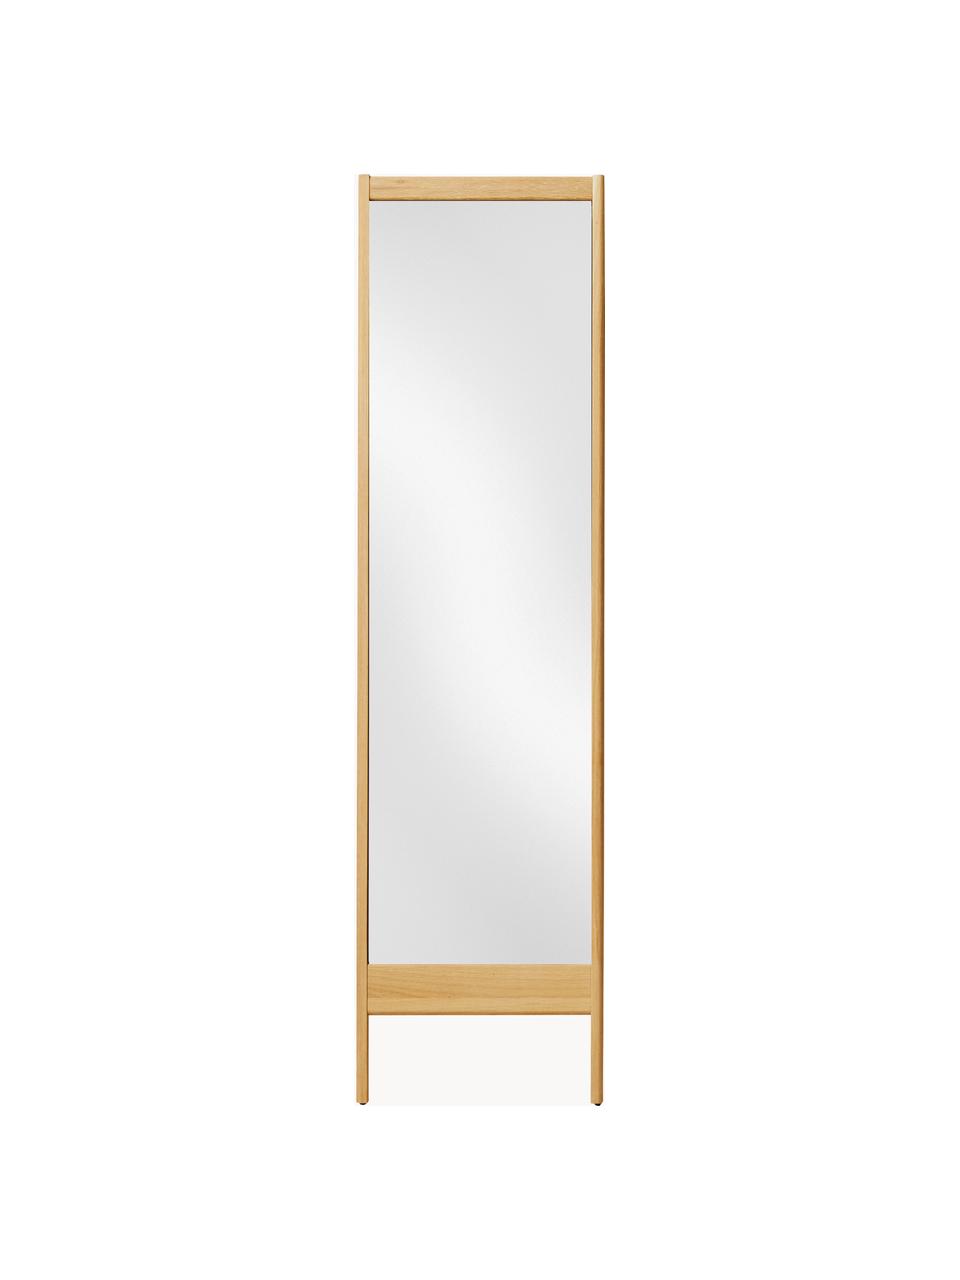 Anlehnspiegel A Line, Rahmen: Eichenholz, Spiegelfläche: Spiegelglas, Eichenholz, B 72 x H 195 cm